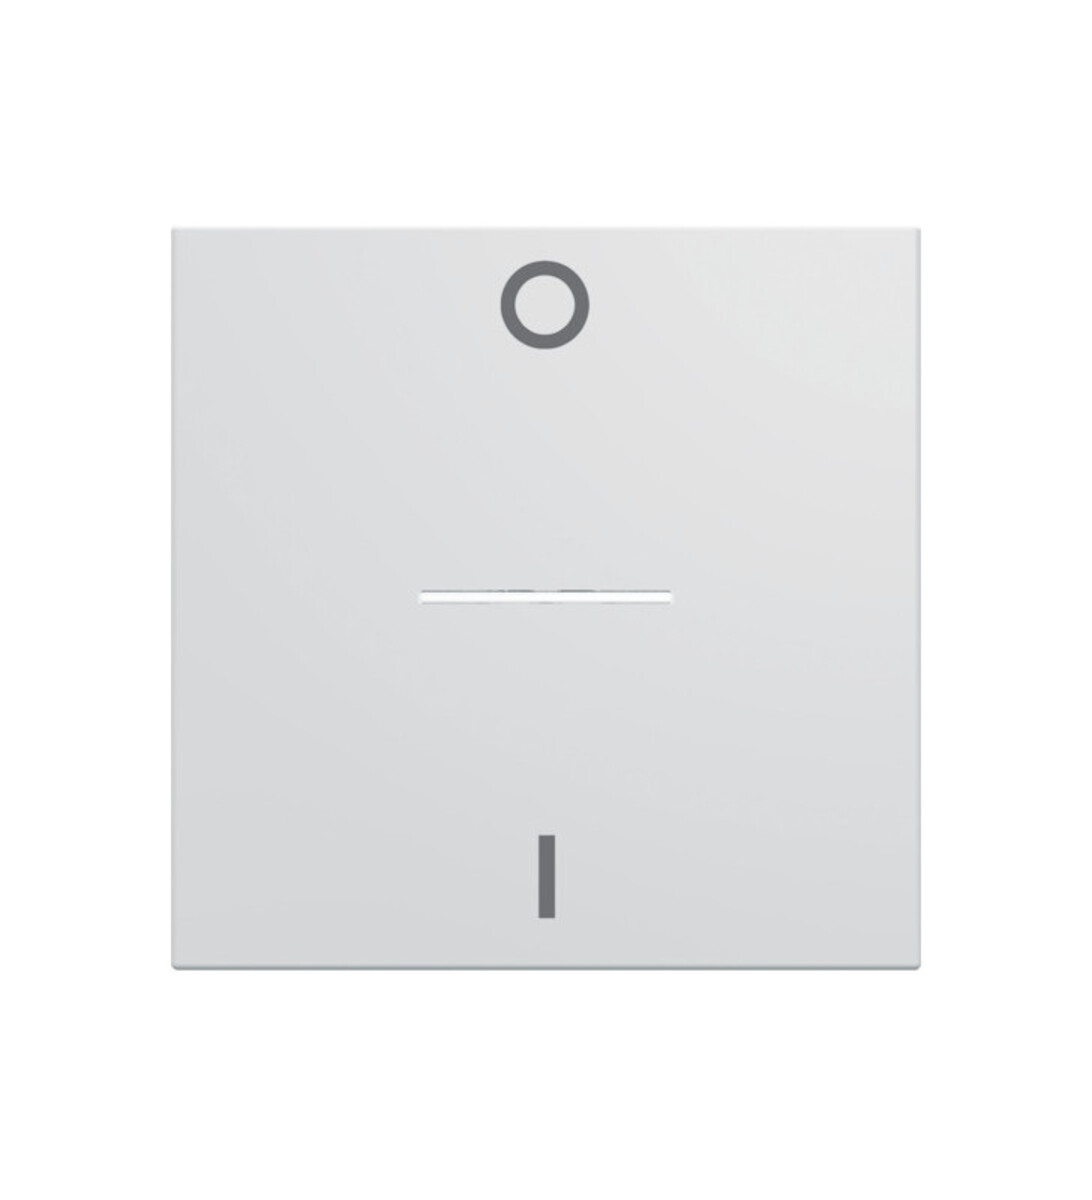 Enjoliveur interrupteur marquage 0-1 à voyant gallery 2 modules - blanc pure - wxd013b - hager